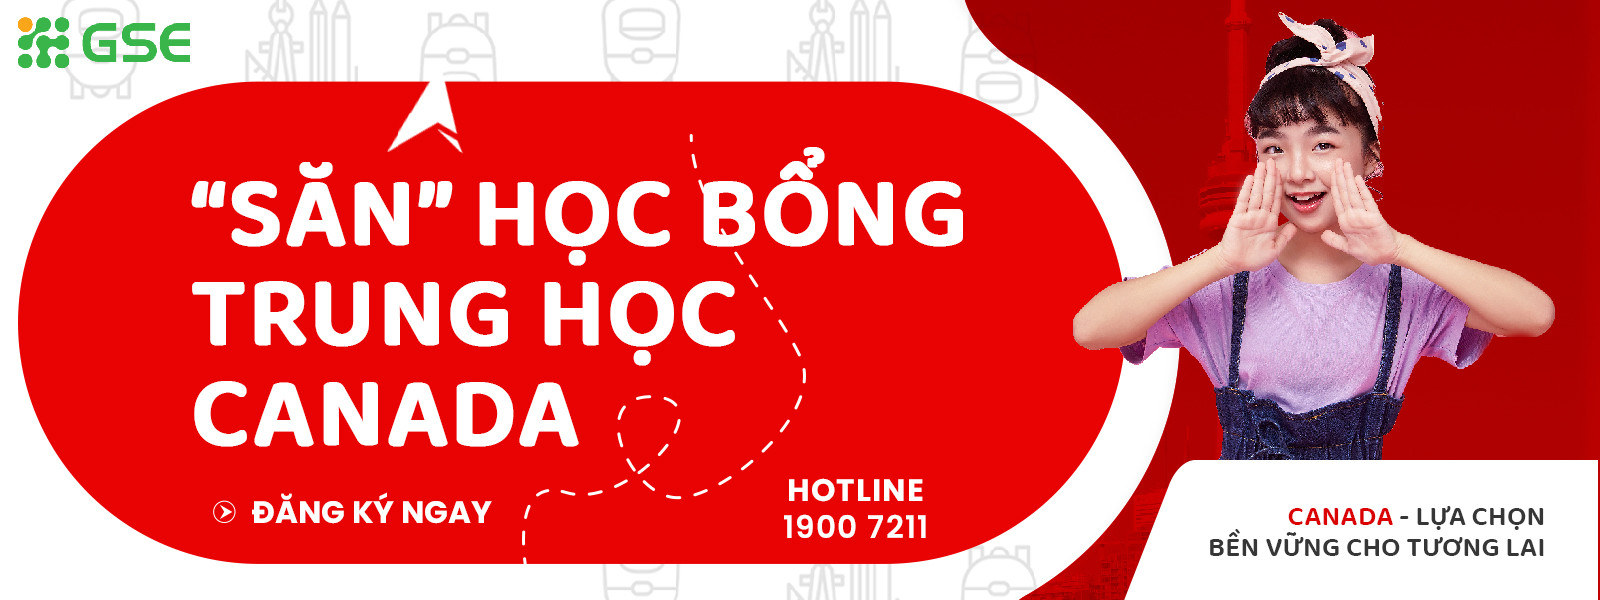 Du Hoc Canada Pho Thong Trung Hoc Tu Van Du Hoc Gse 1600x600